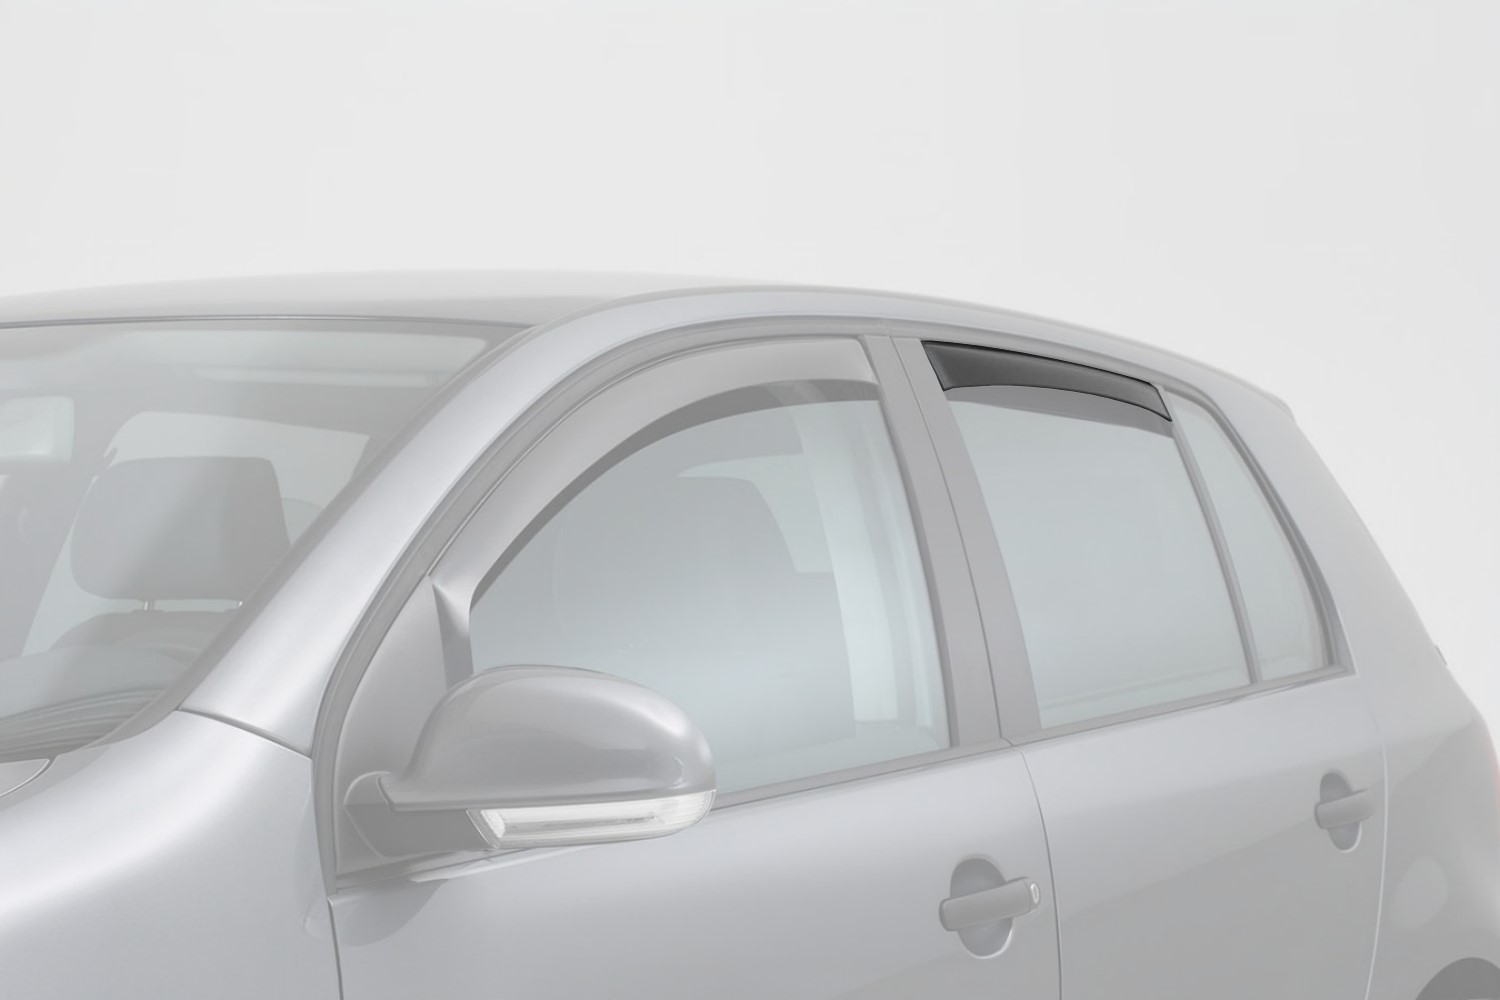 Déflecteurs fenêtre Audi A4 (B9) arrière